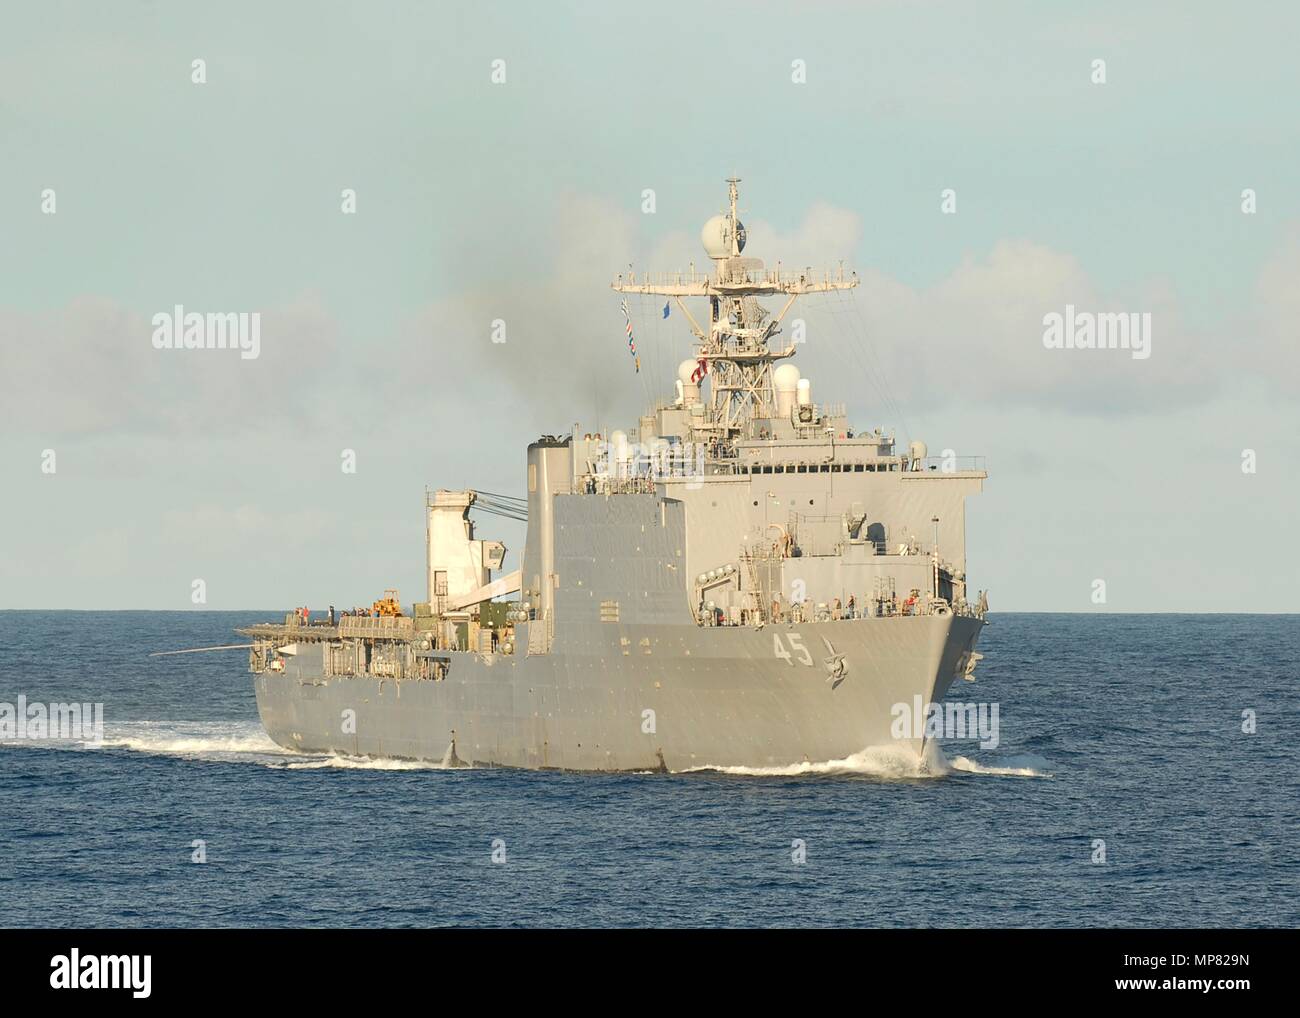 Die US-Marine Whidbey Island-Klasse amphibische Landung dock Schiff USS Comstock parow unterwegs September 26, 2011 im Pazifischen Ozean. (Foto von Larry S. Carlson über Planetpix) Stockfoto